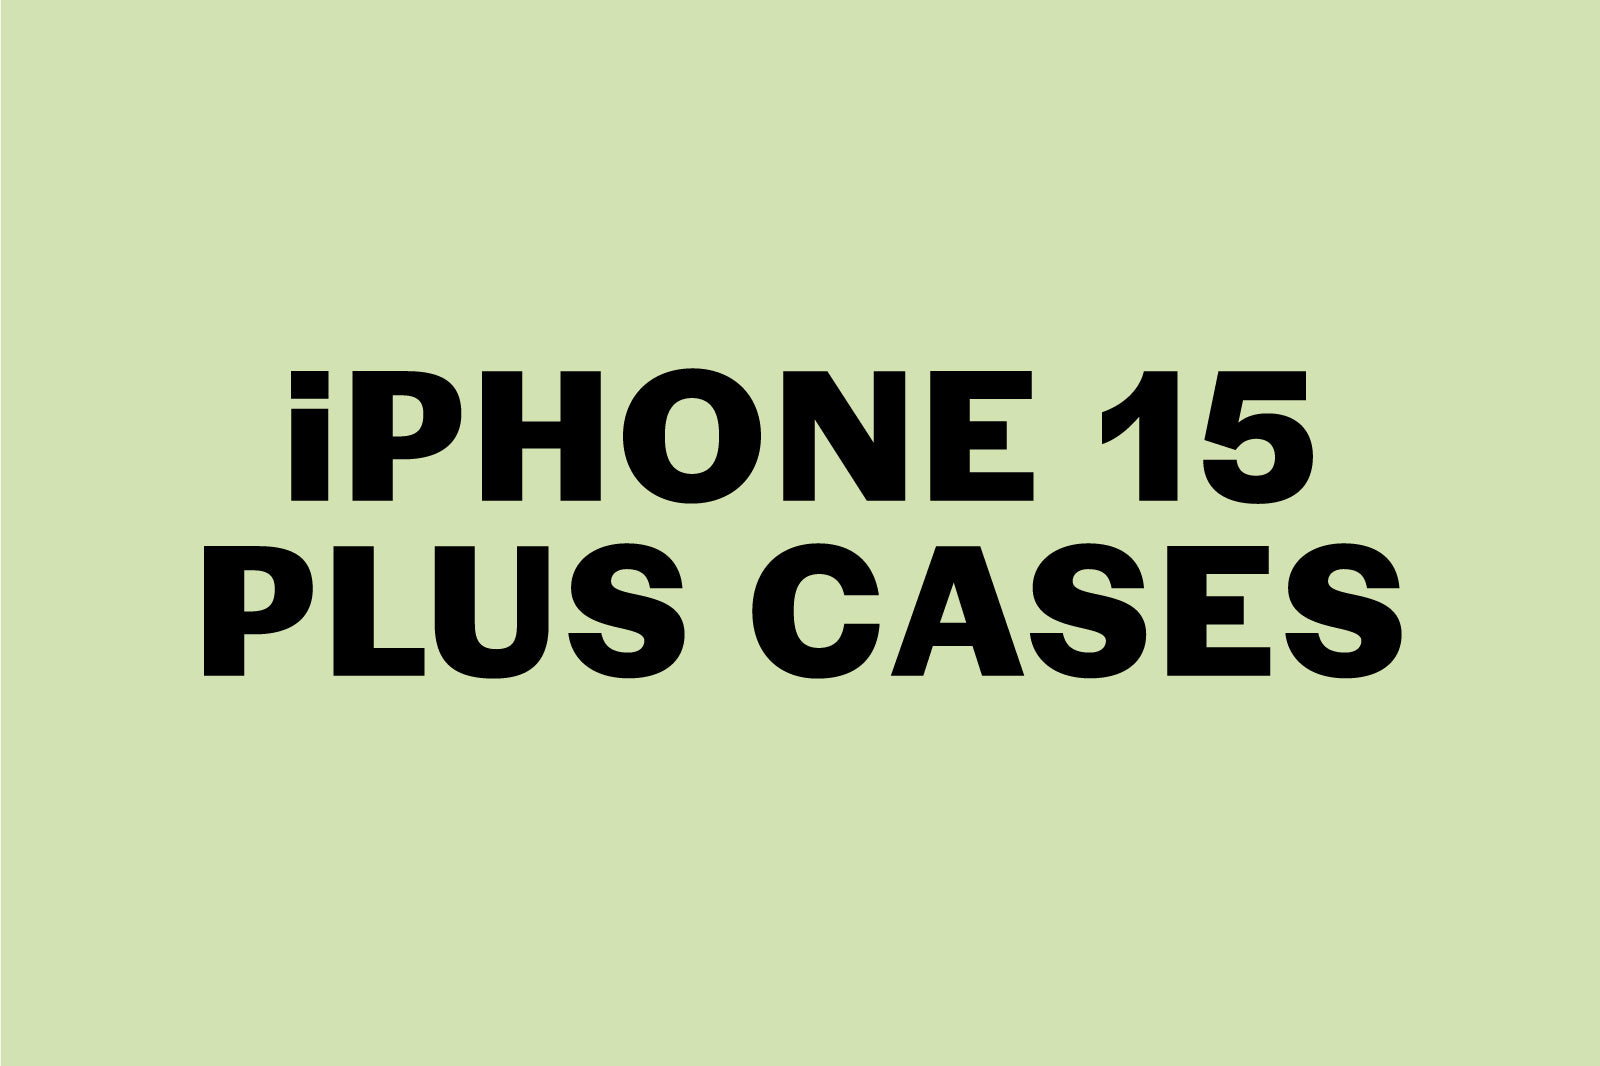 iPhone 15 Plus Cases